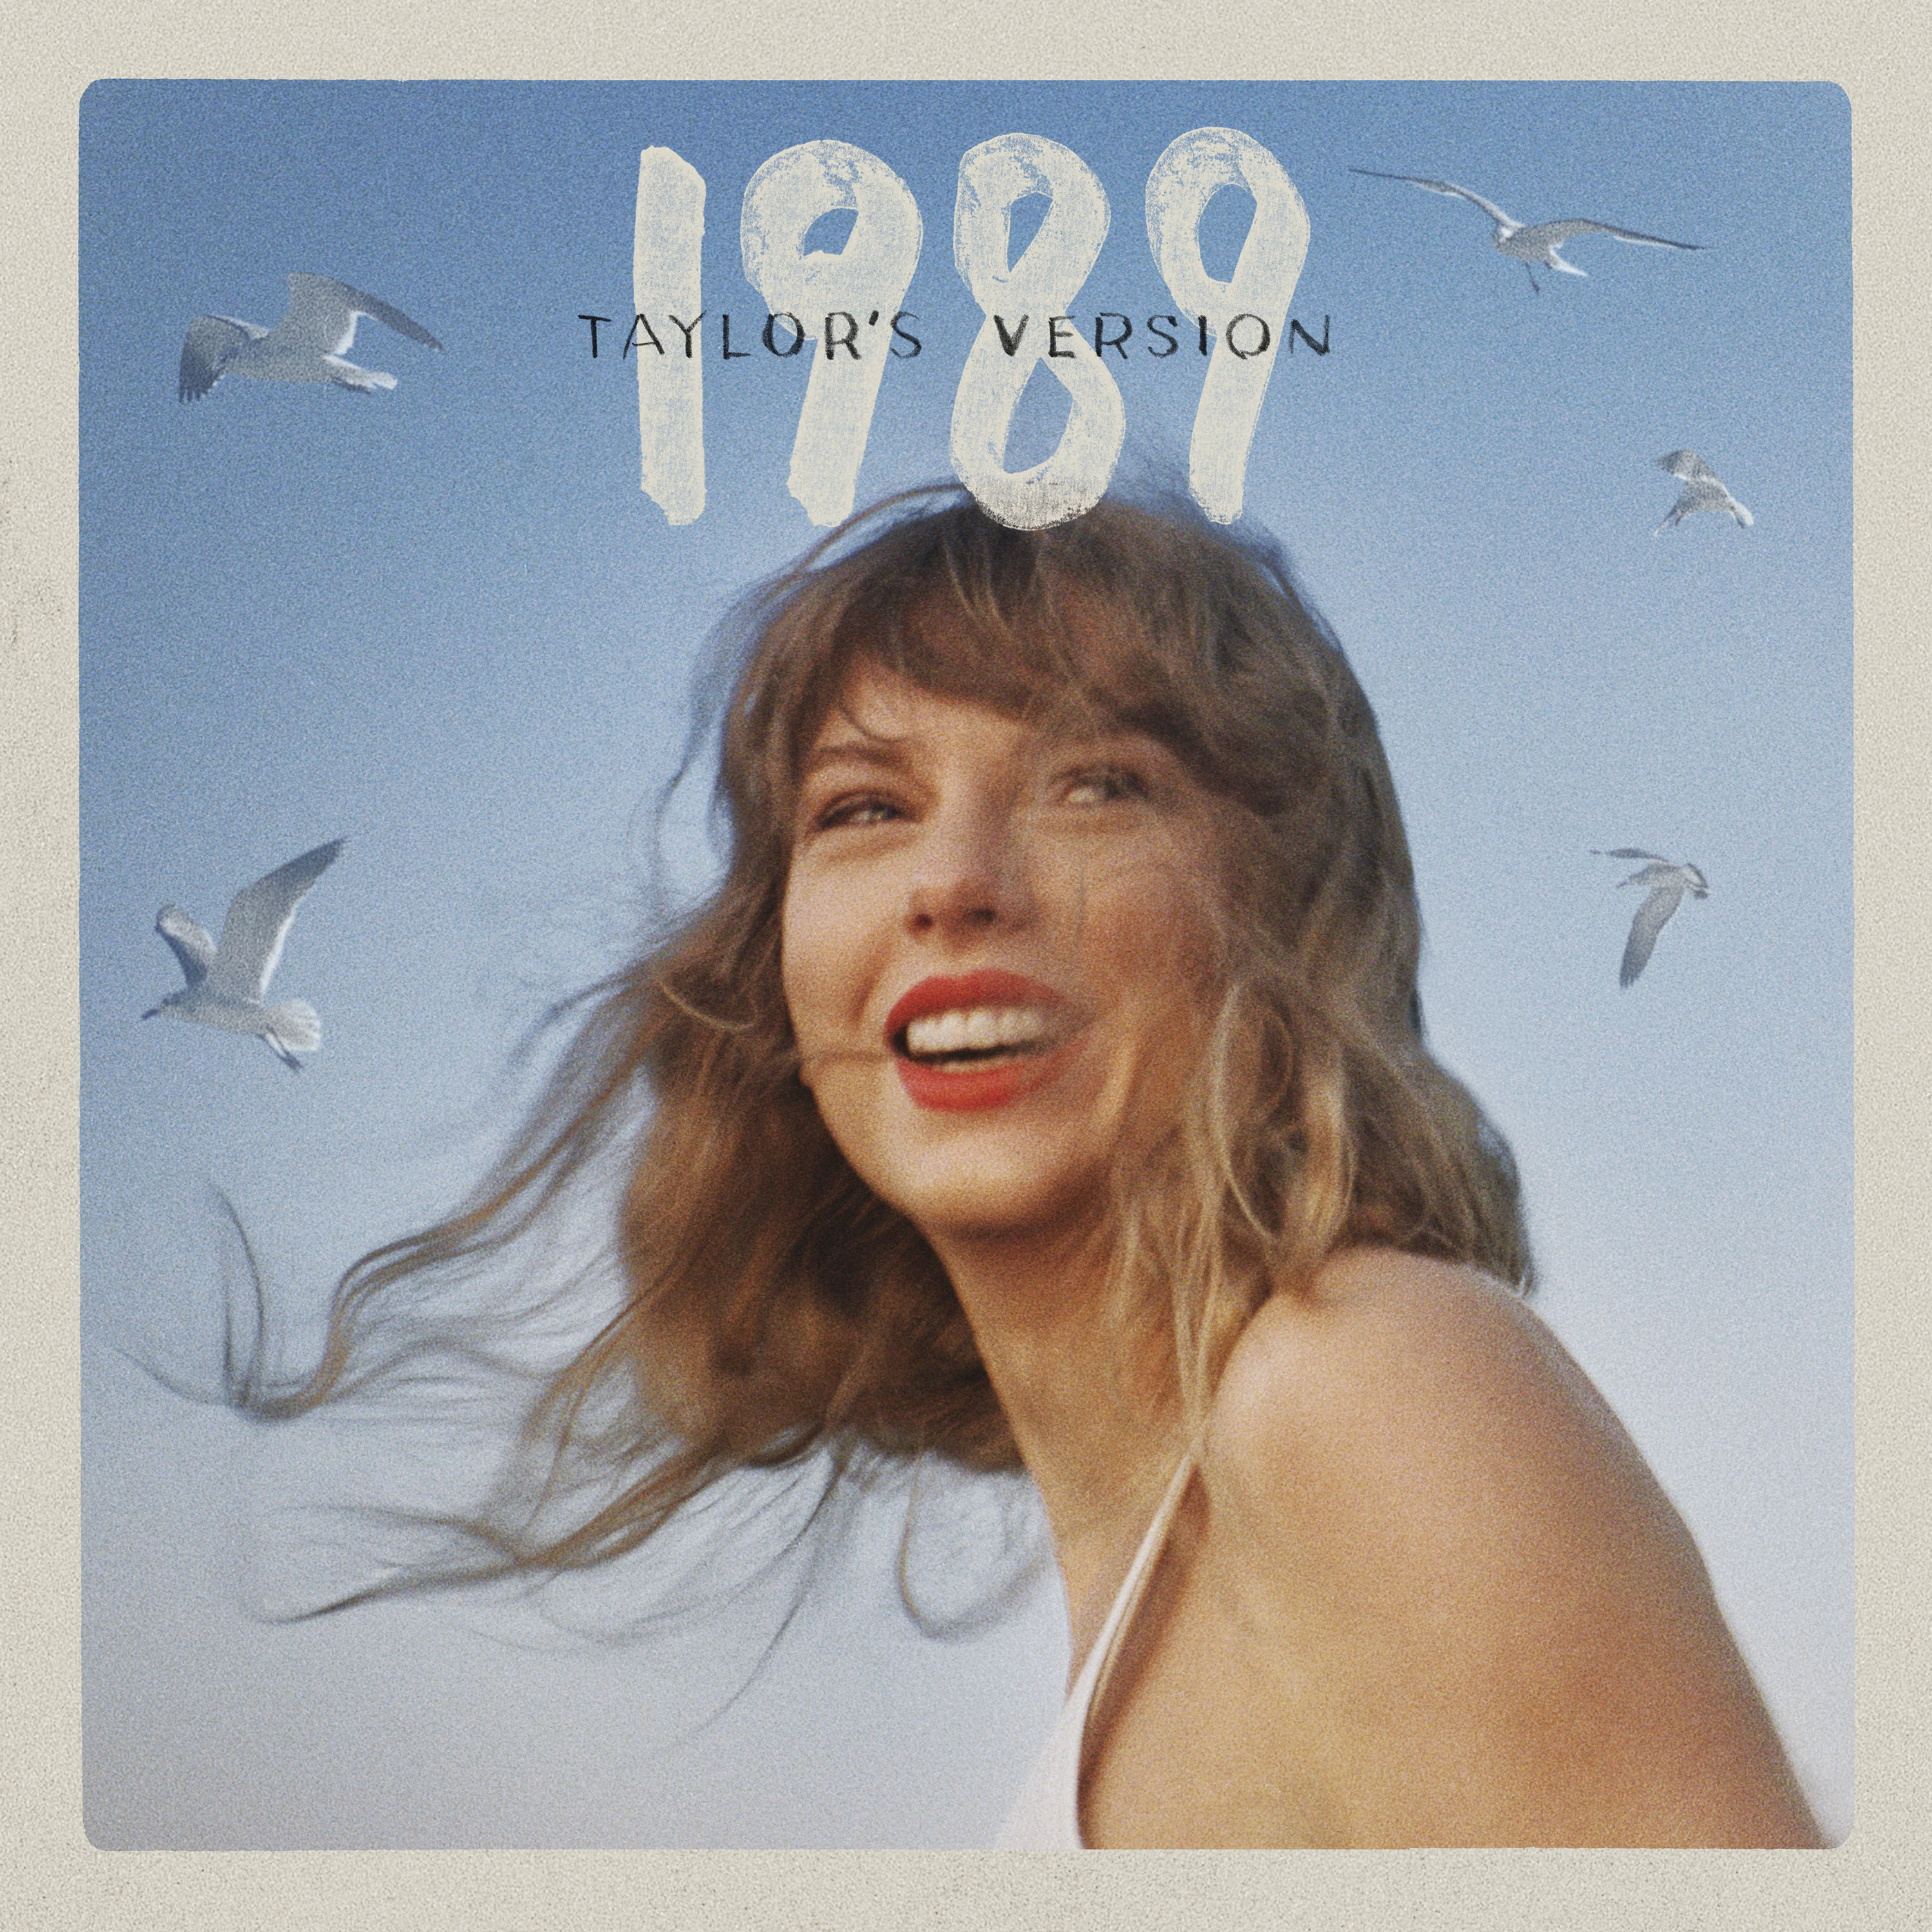 1989 Taylor's Version enthält fünf unveröffentlichte Vault-Tracks